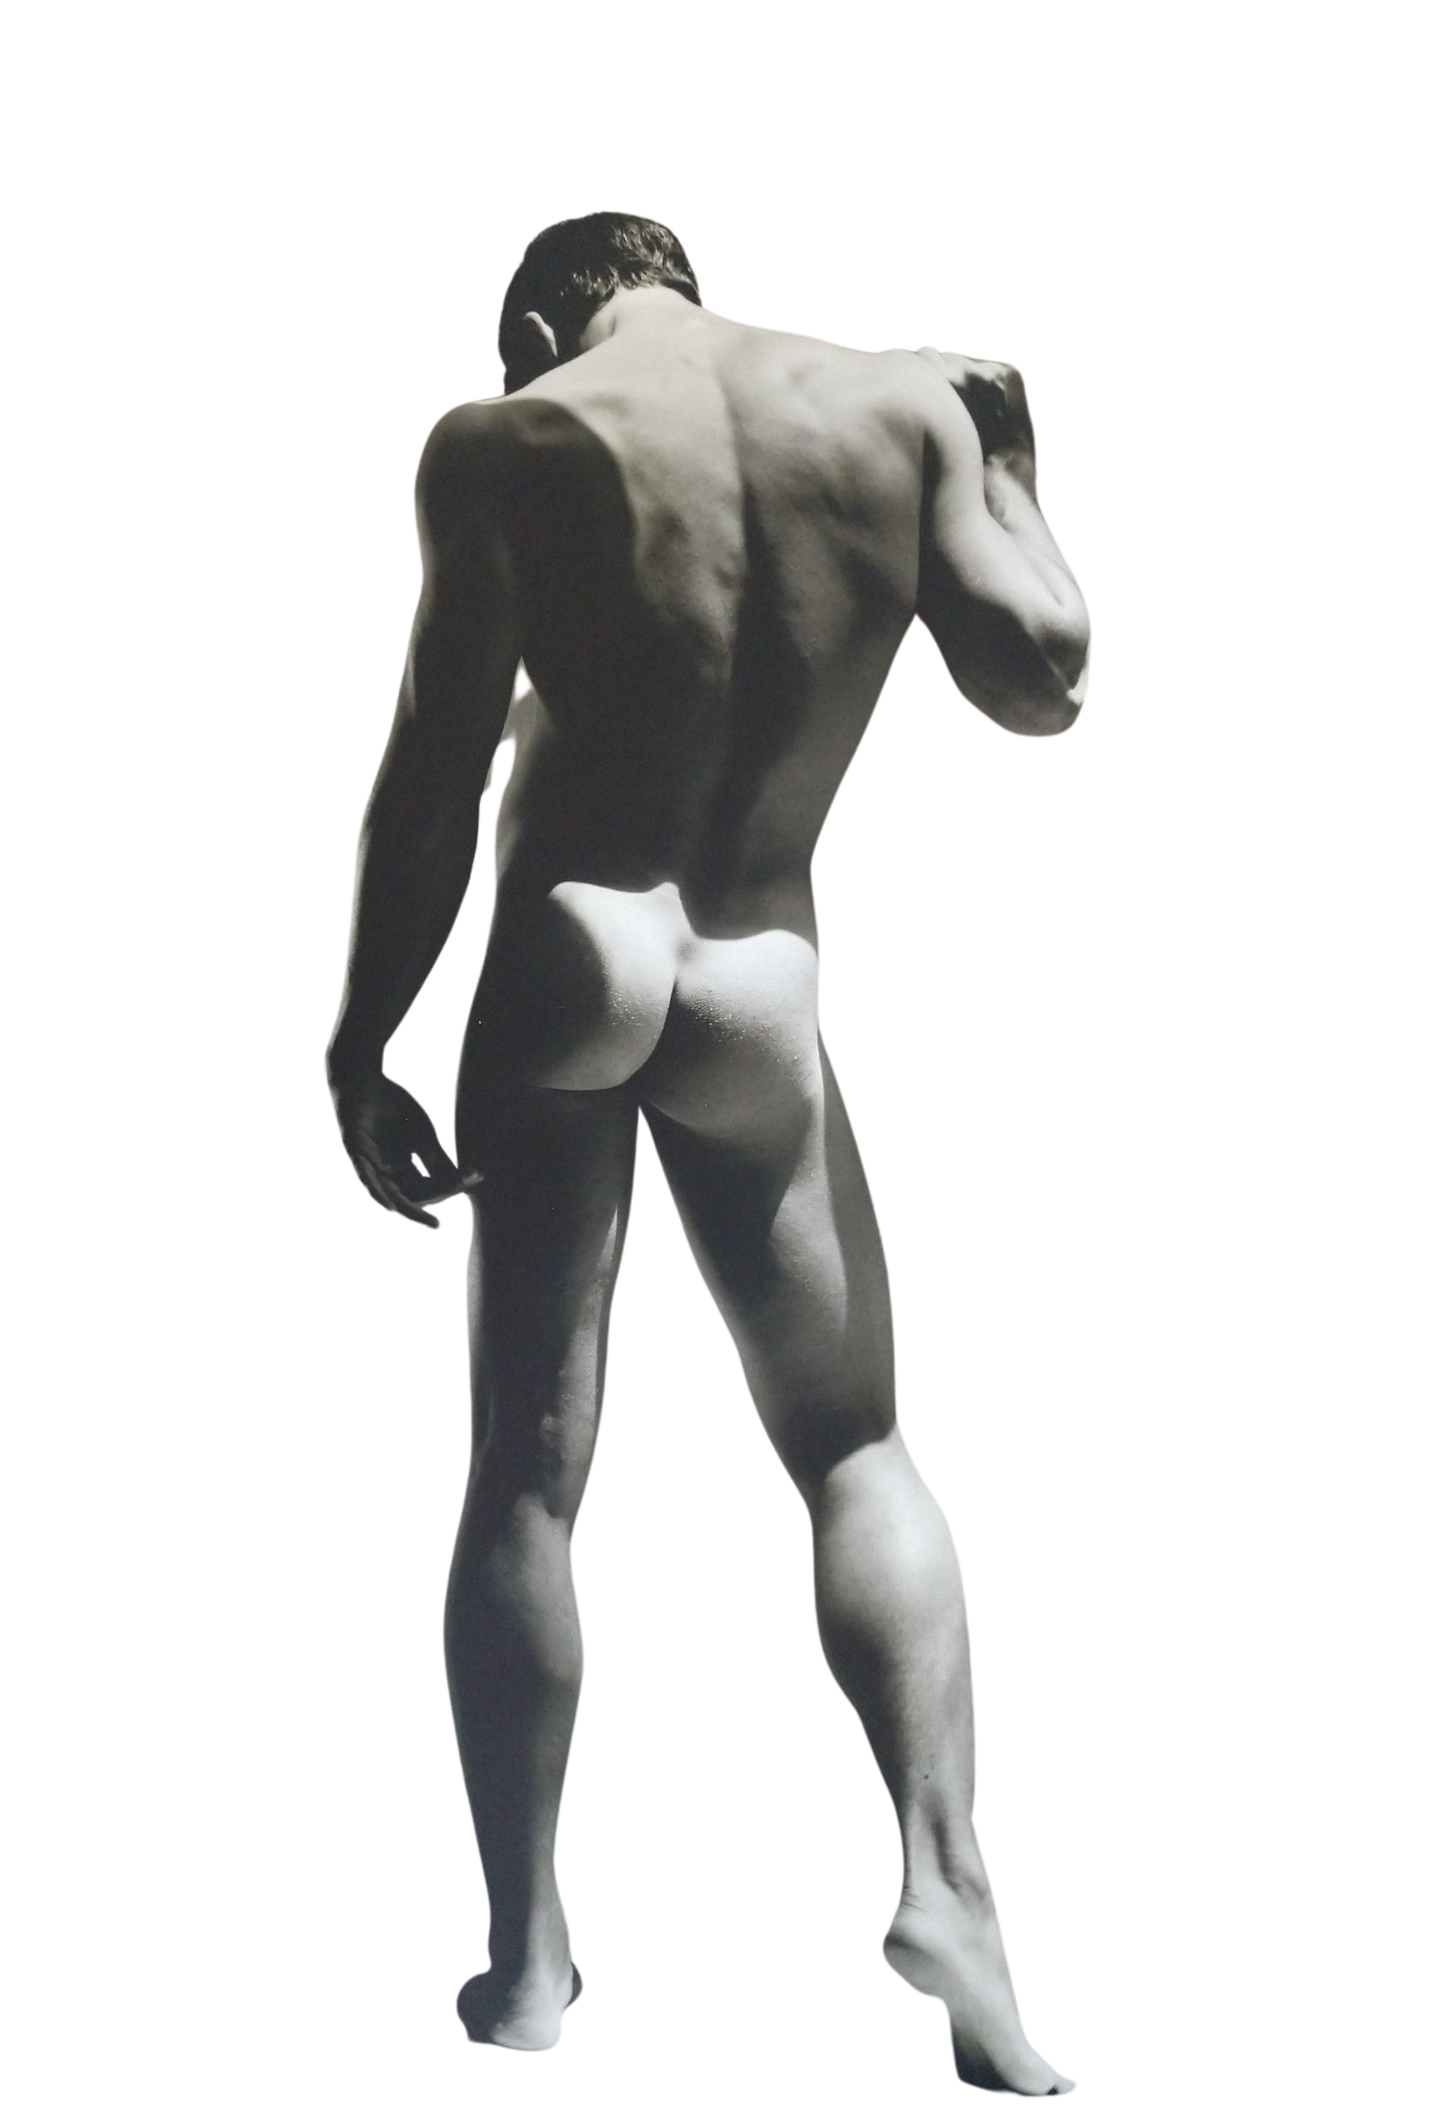 Greg Gorman Male Nude 1992 (24w x 36t)